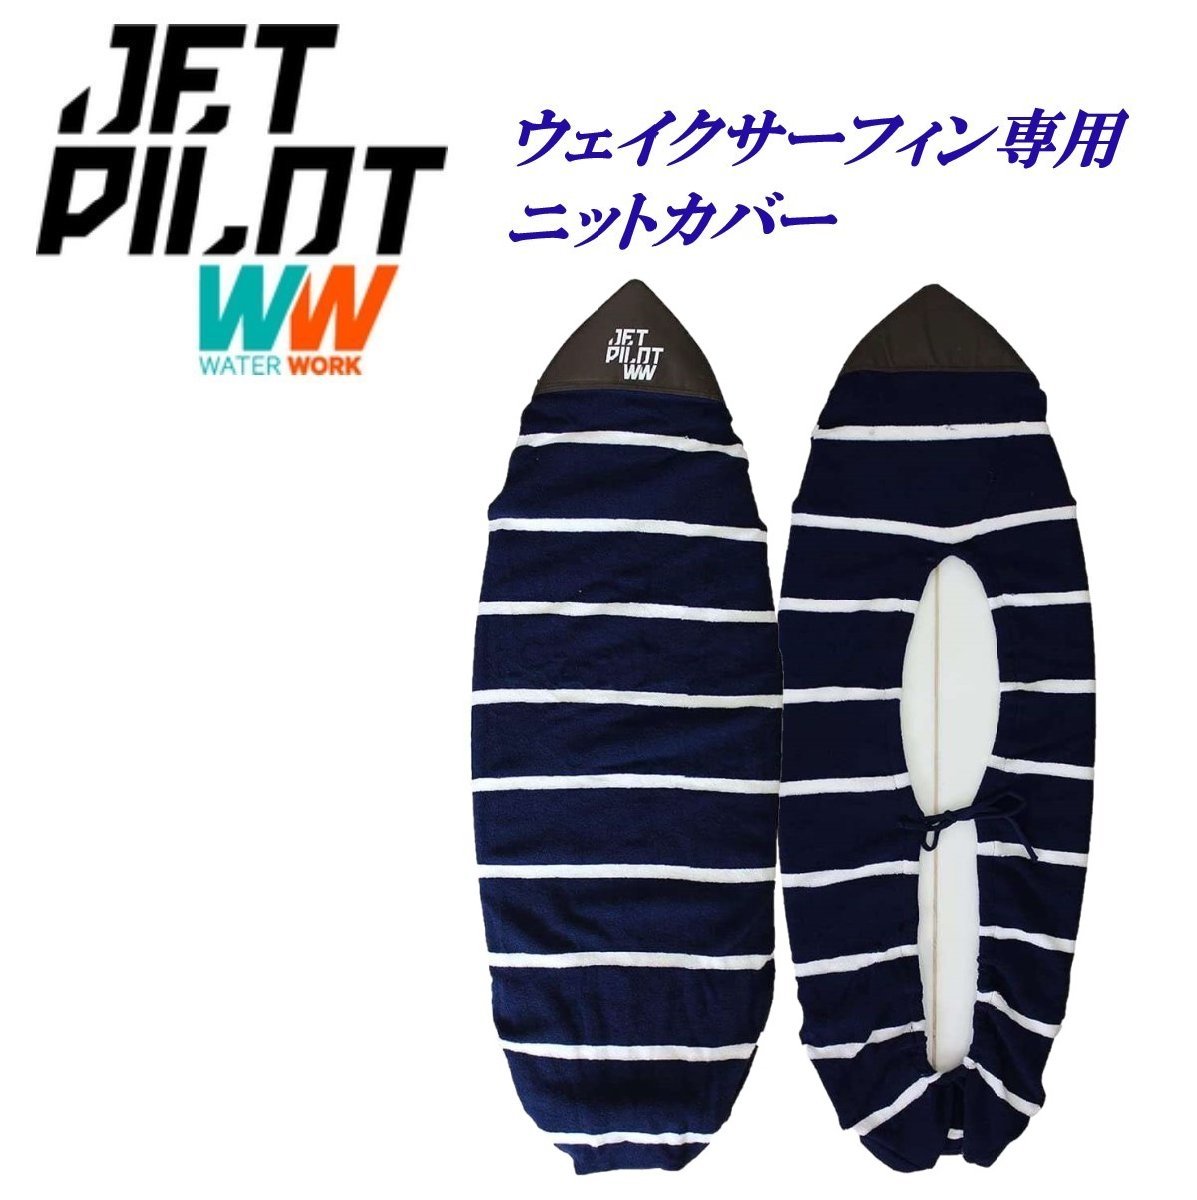  jet Pilot JETPILOT wake серфинг специальный покрытие бесплатная доставка вязаный панель покрытие JJP21910 темно-синий 